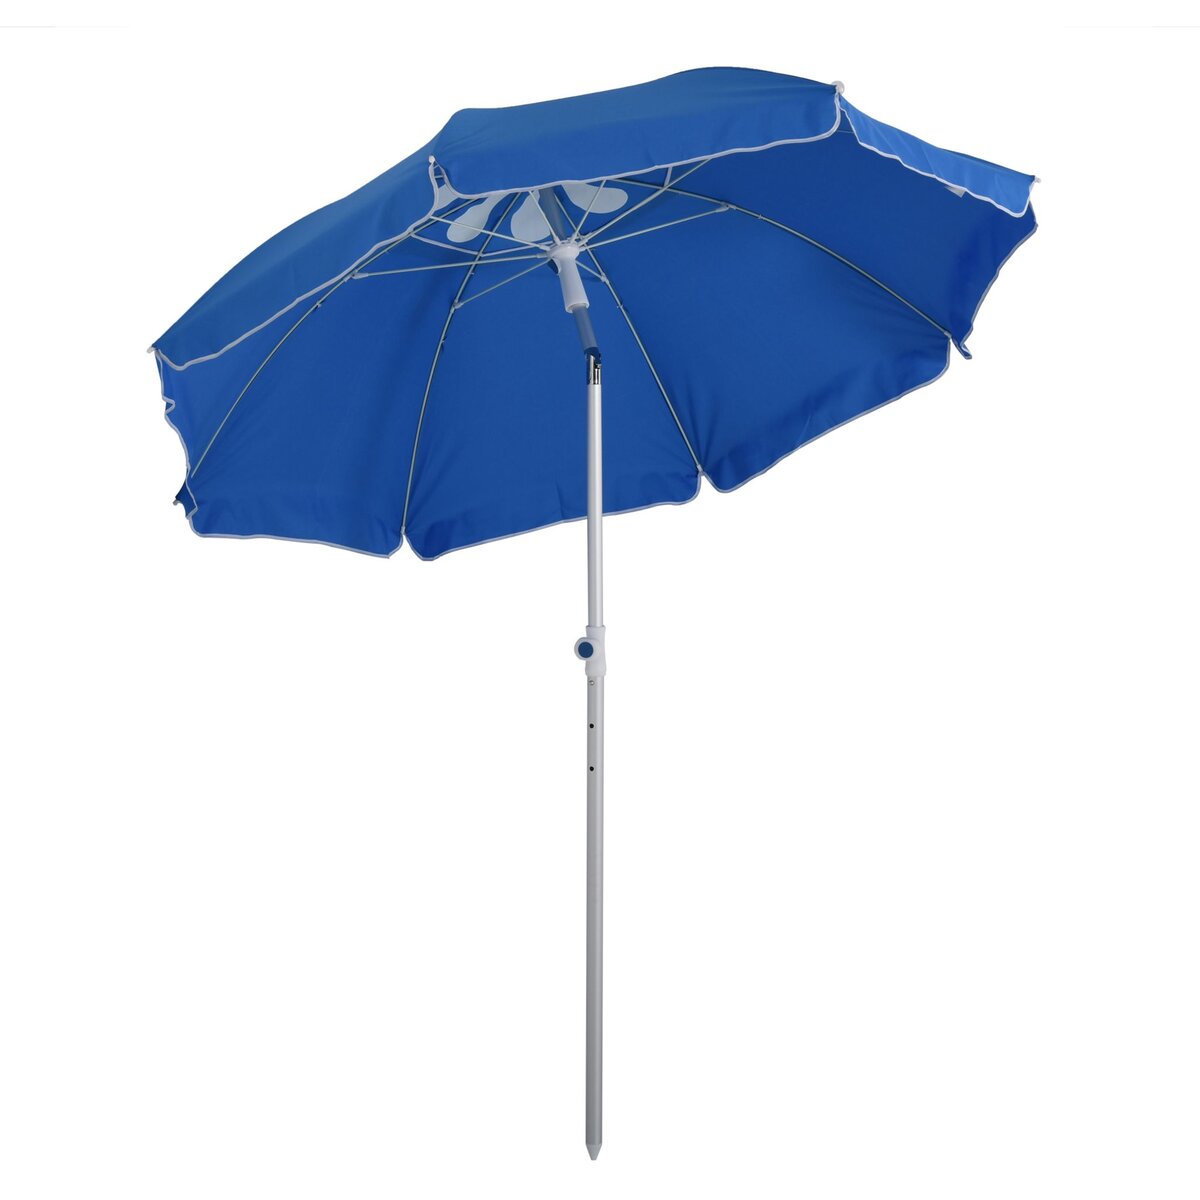 OUTSUNNY Parasol inclinable octogonal Ø 190 cm tissu polyester haute densité anti-UV hauteur réglable mât alu sac de transport inclus bleu